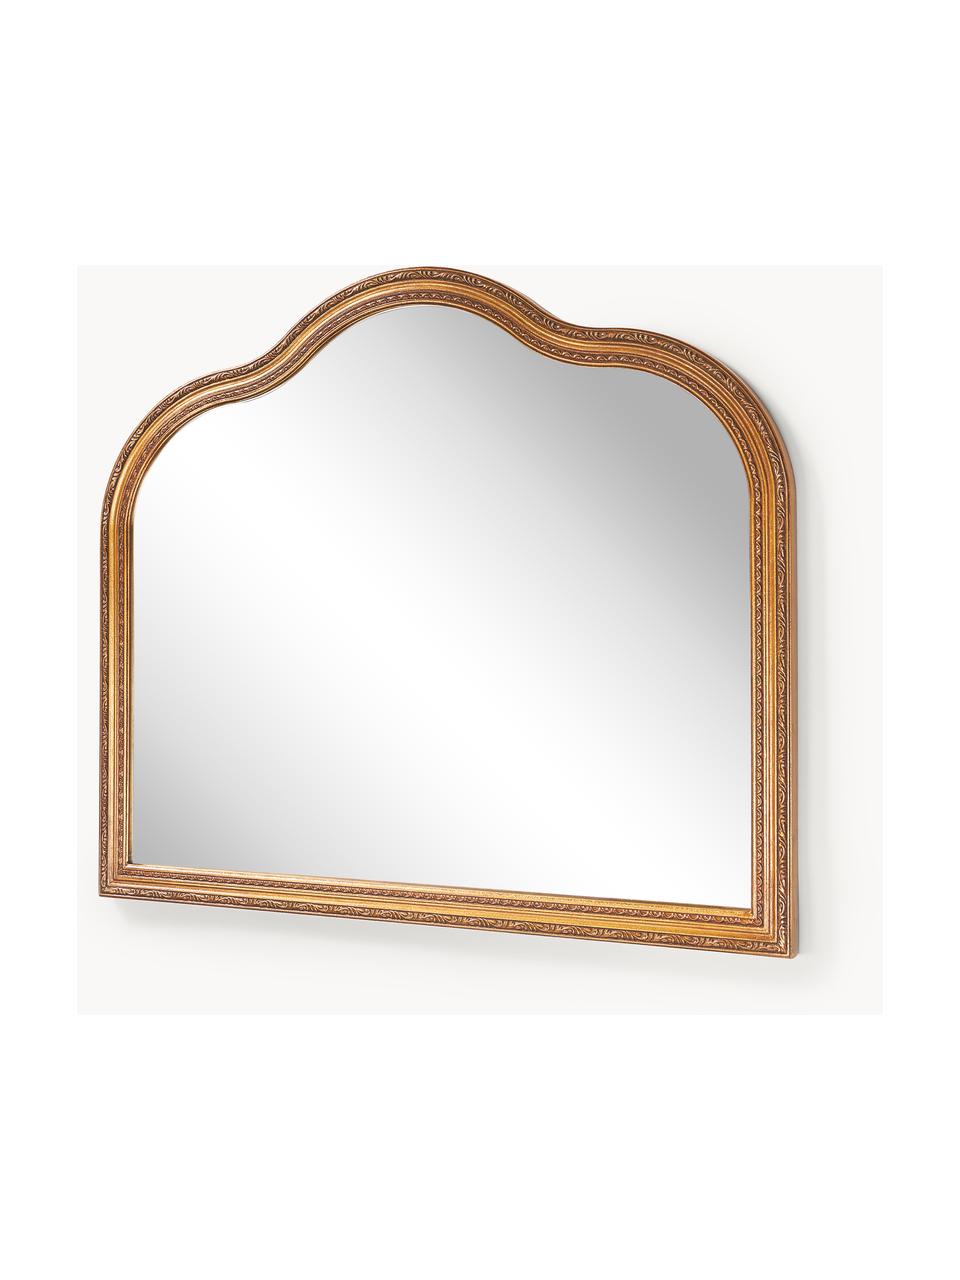 Specchio da parete barocco Muriel, Cornice: Legno massiccio certifica, Superficie: vetro a specchio, Retro: metallo, pannello di fibr, Dorato, Larg. 90 x Alt. 77 cm